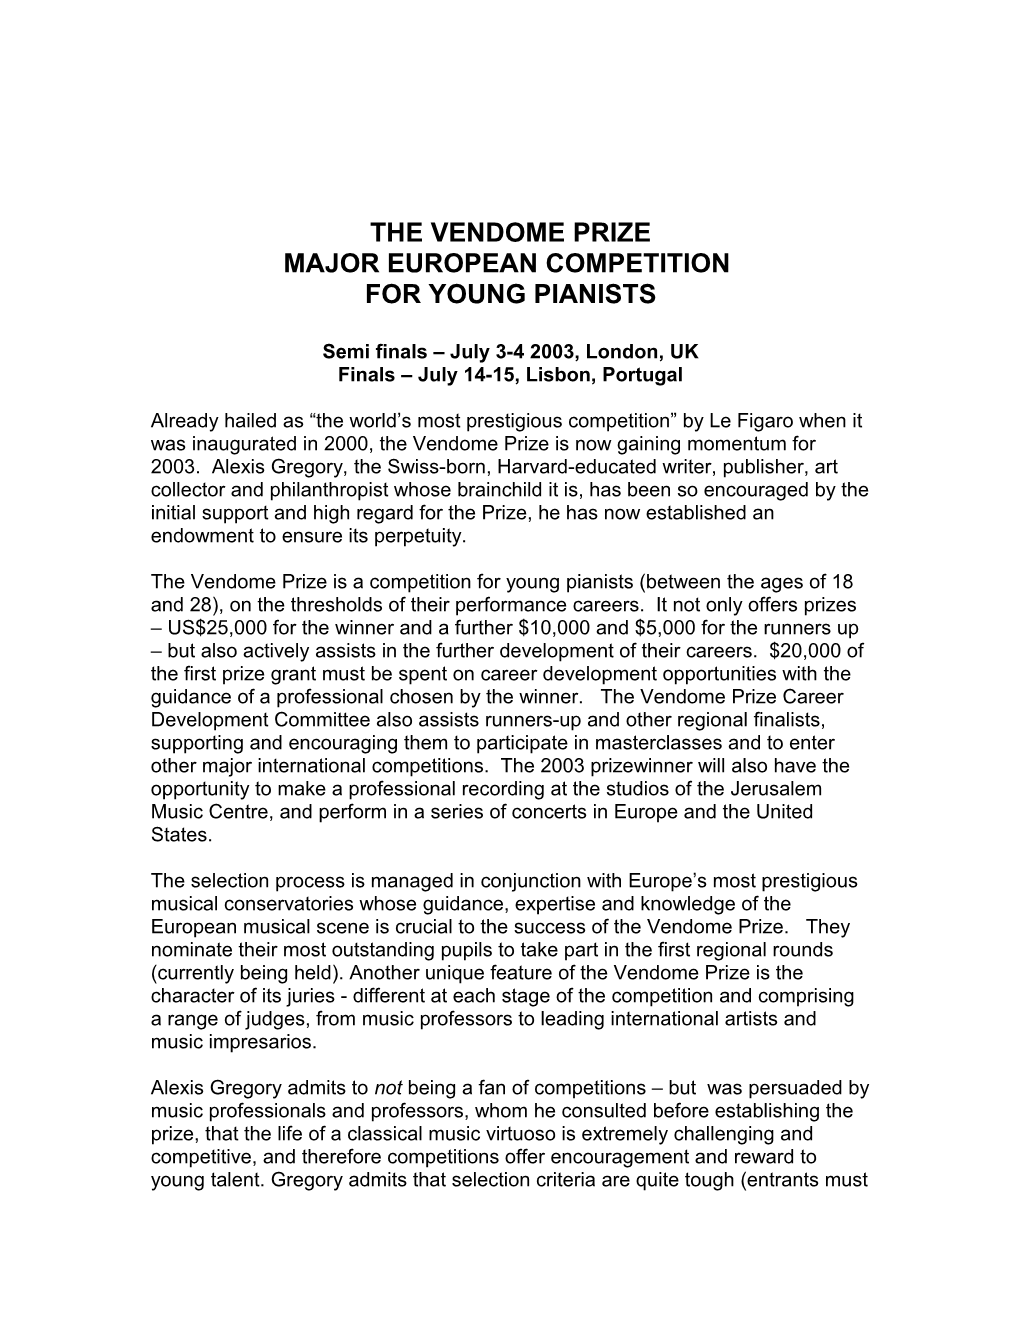 The Vendome Prize